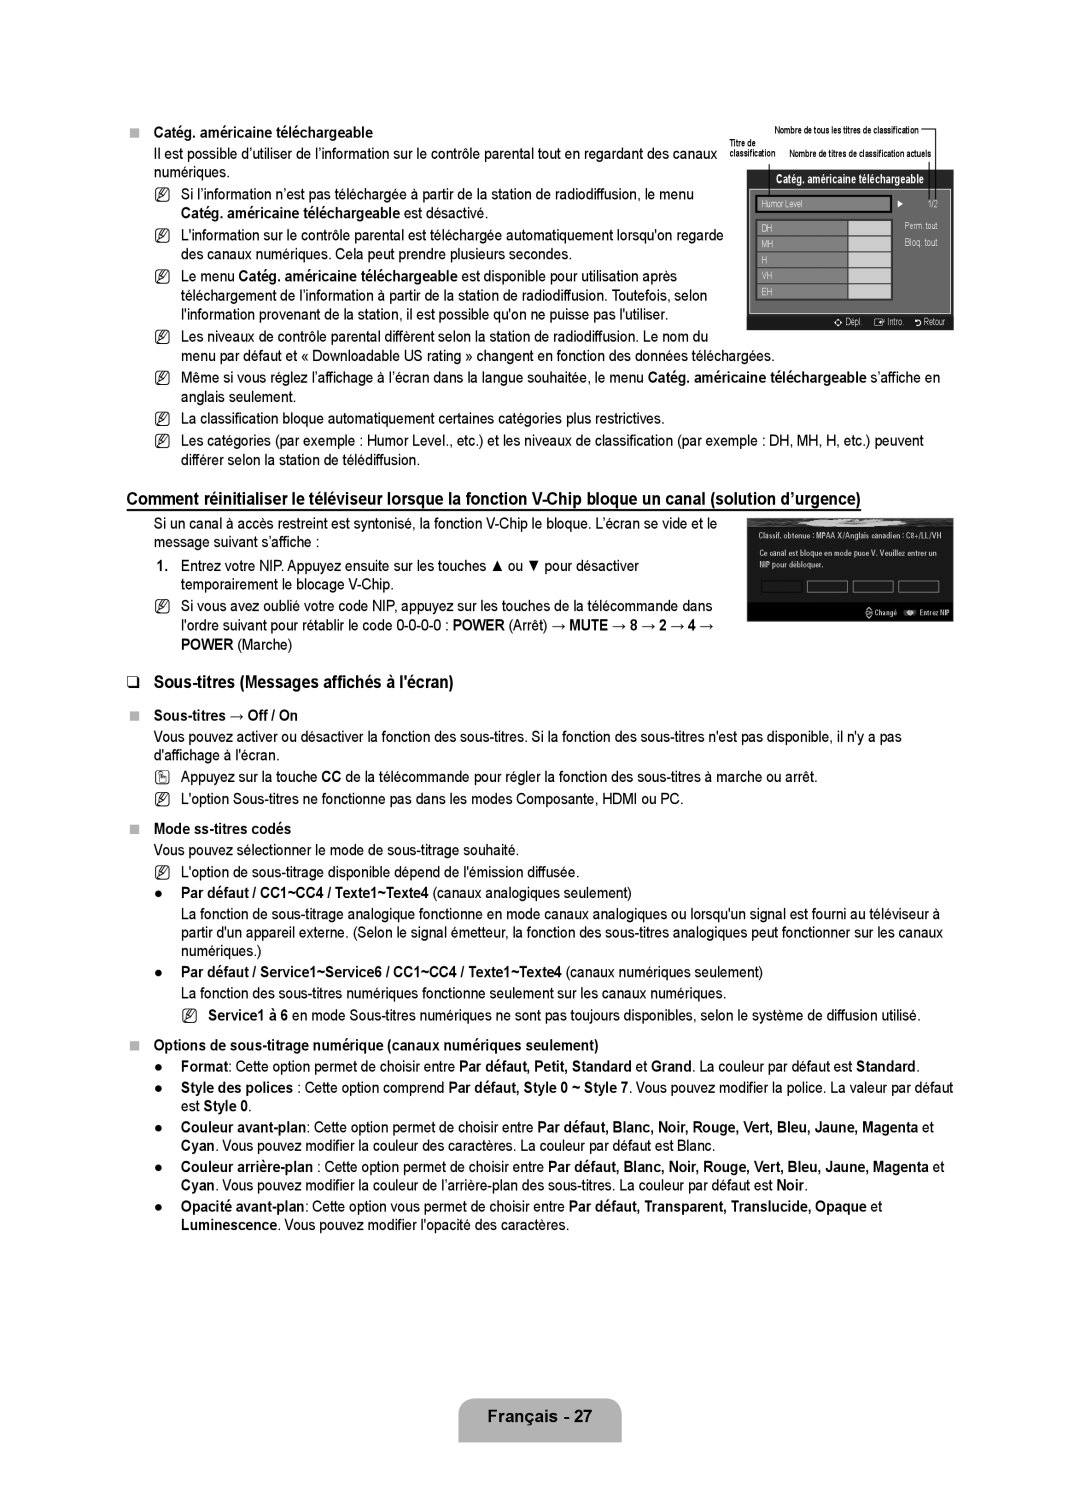 Samsung LN6B60 user manual Sous-titres Messages affichés à lécran, Sous-titres → Off / On, Mode ss-titres codés 